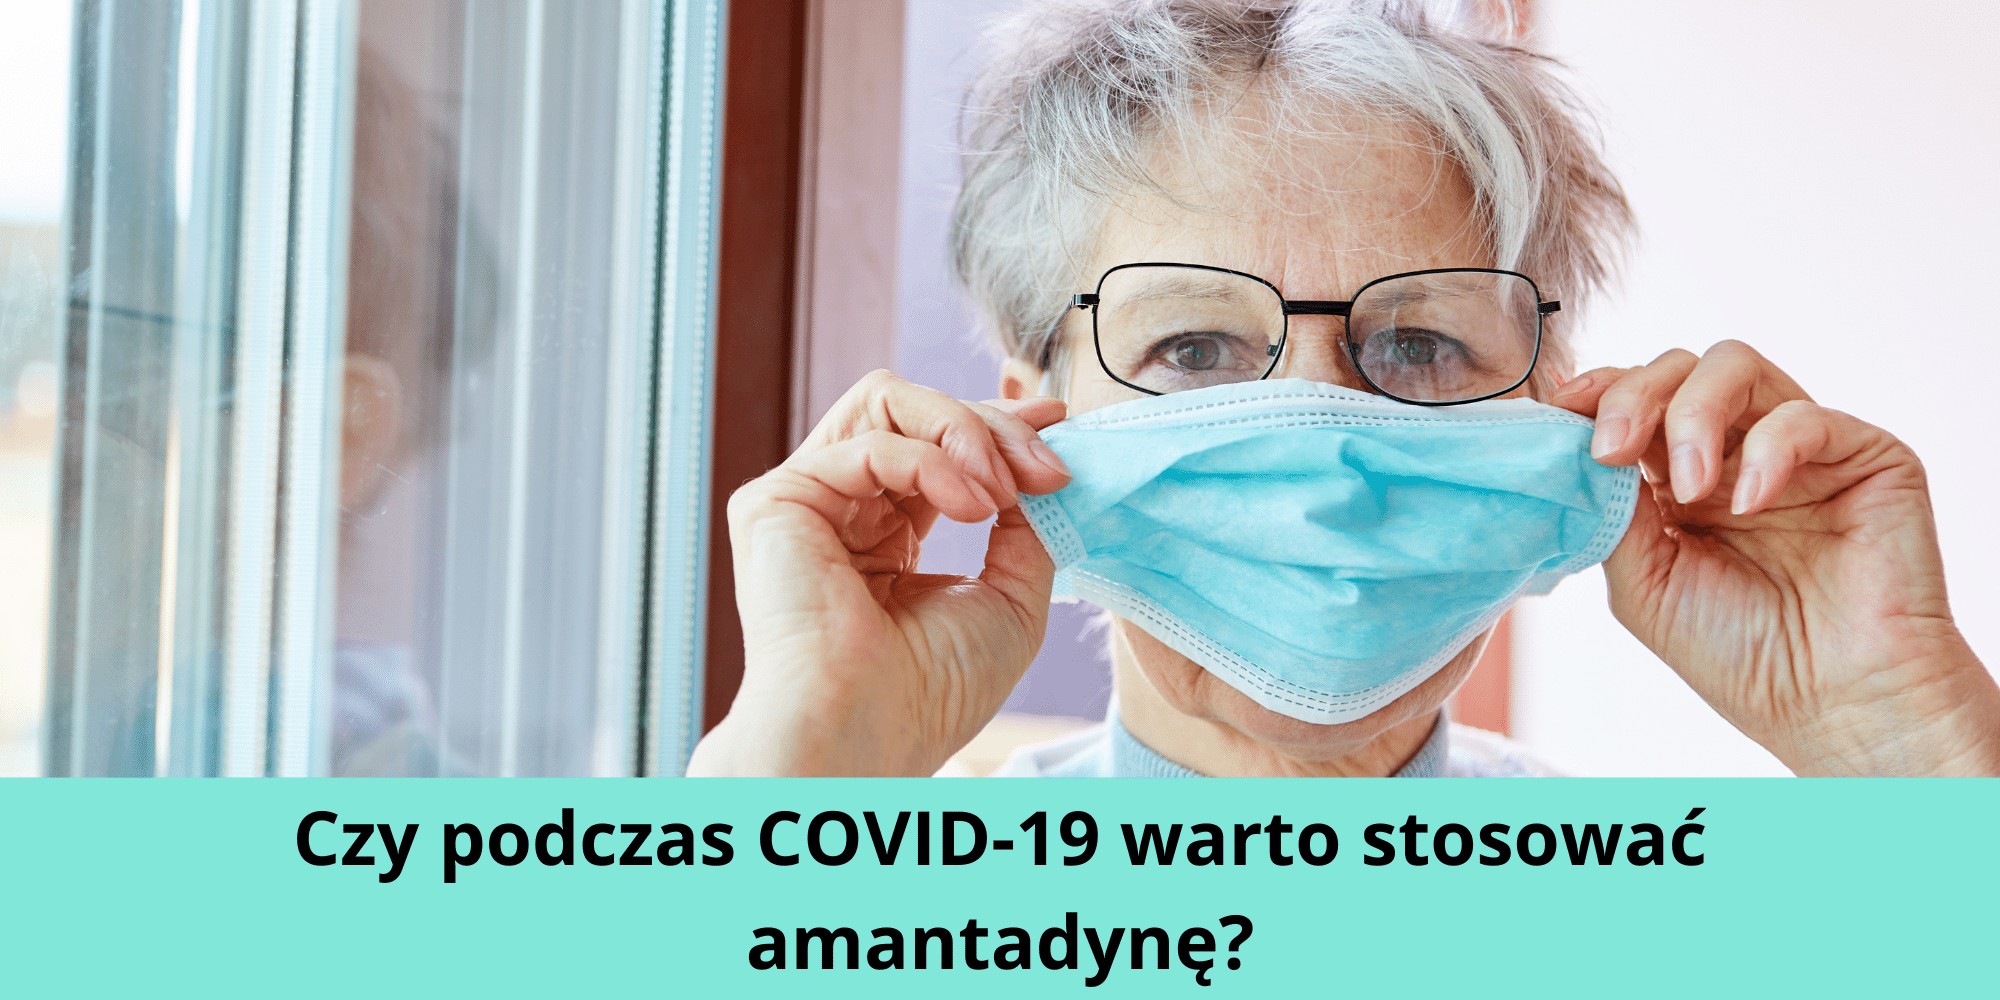 Czy podczas COVID-19 warto stosować amantadynę